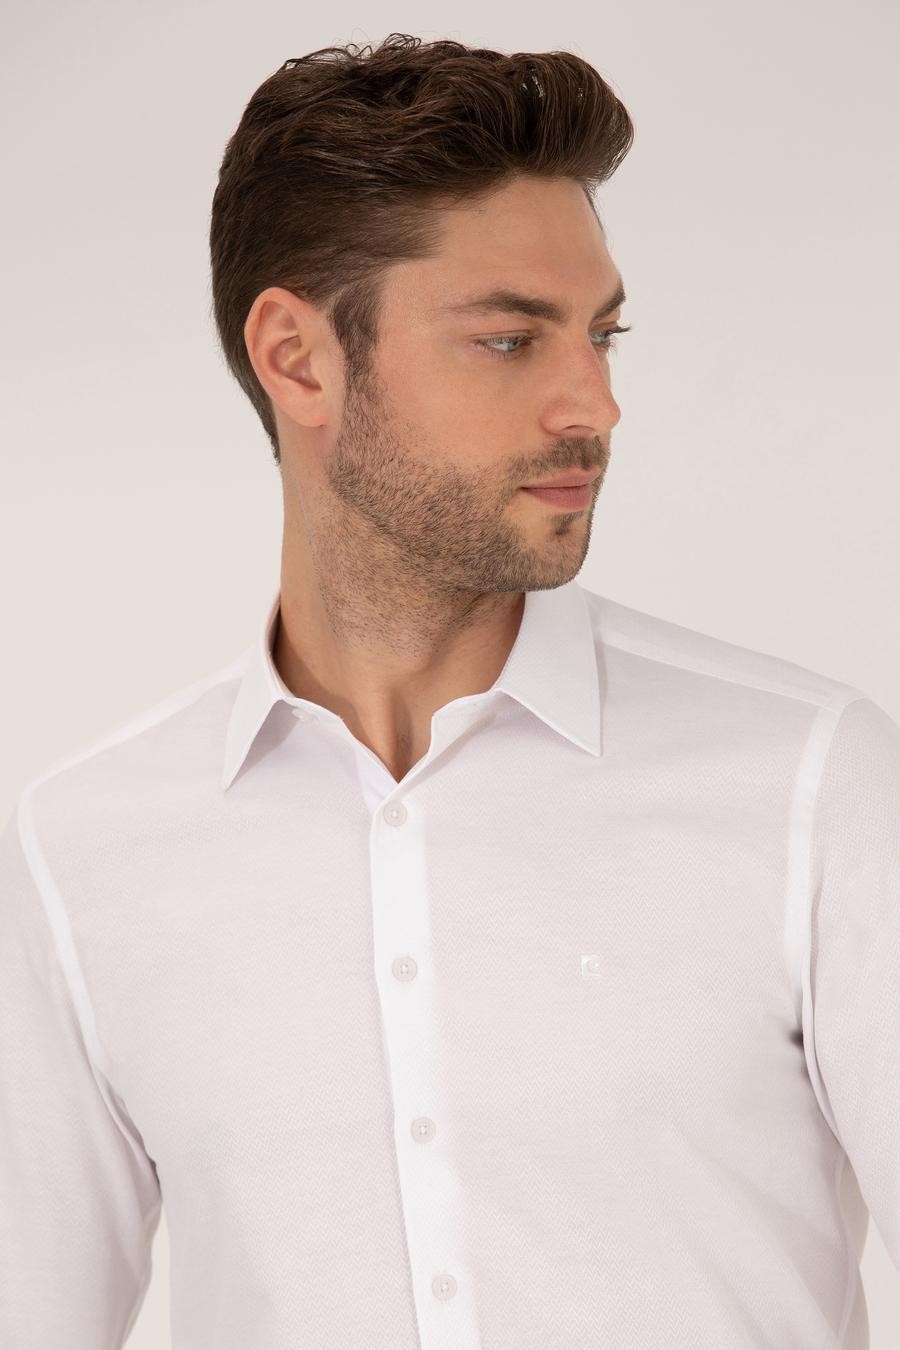 پیراهن یقه کلاسیک سفید  اندامی آستین بلند مردانه  پیرکاردین